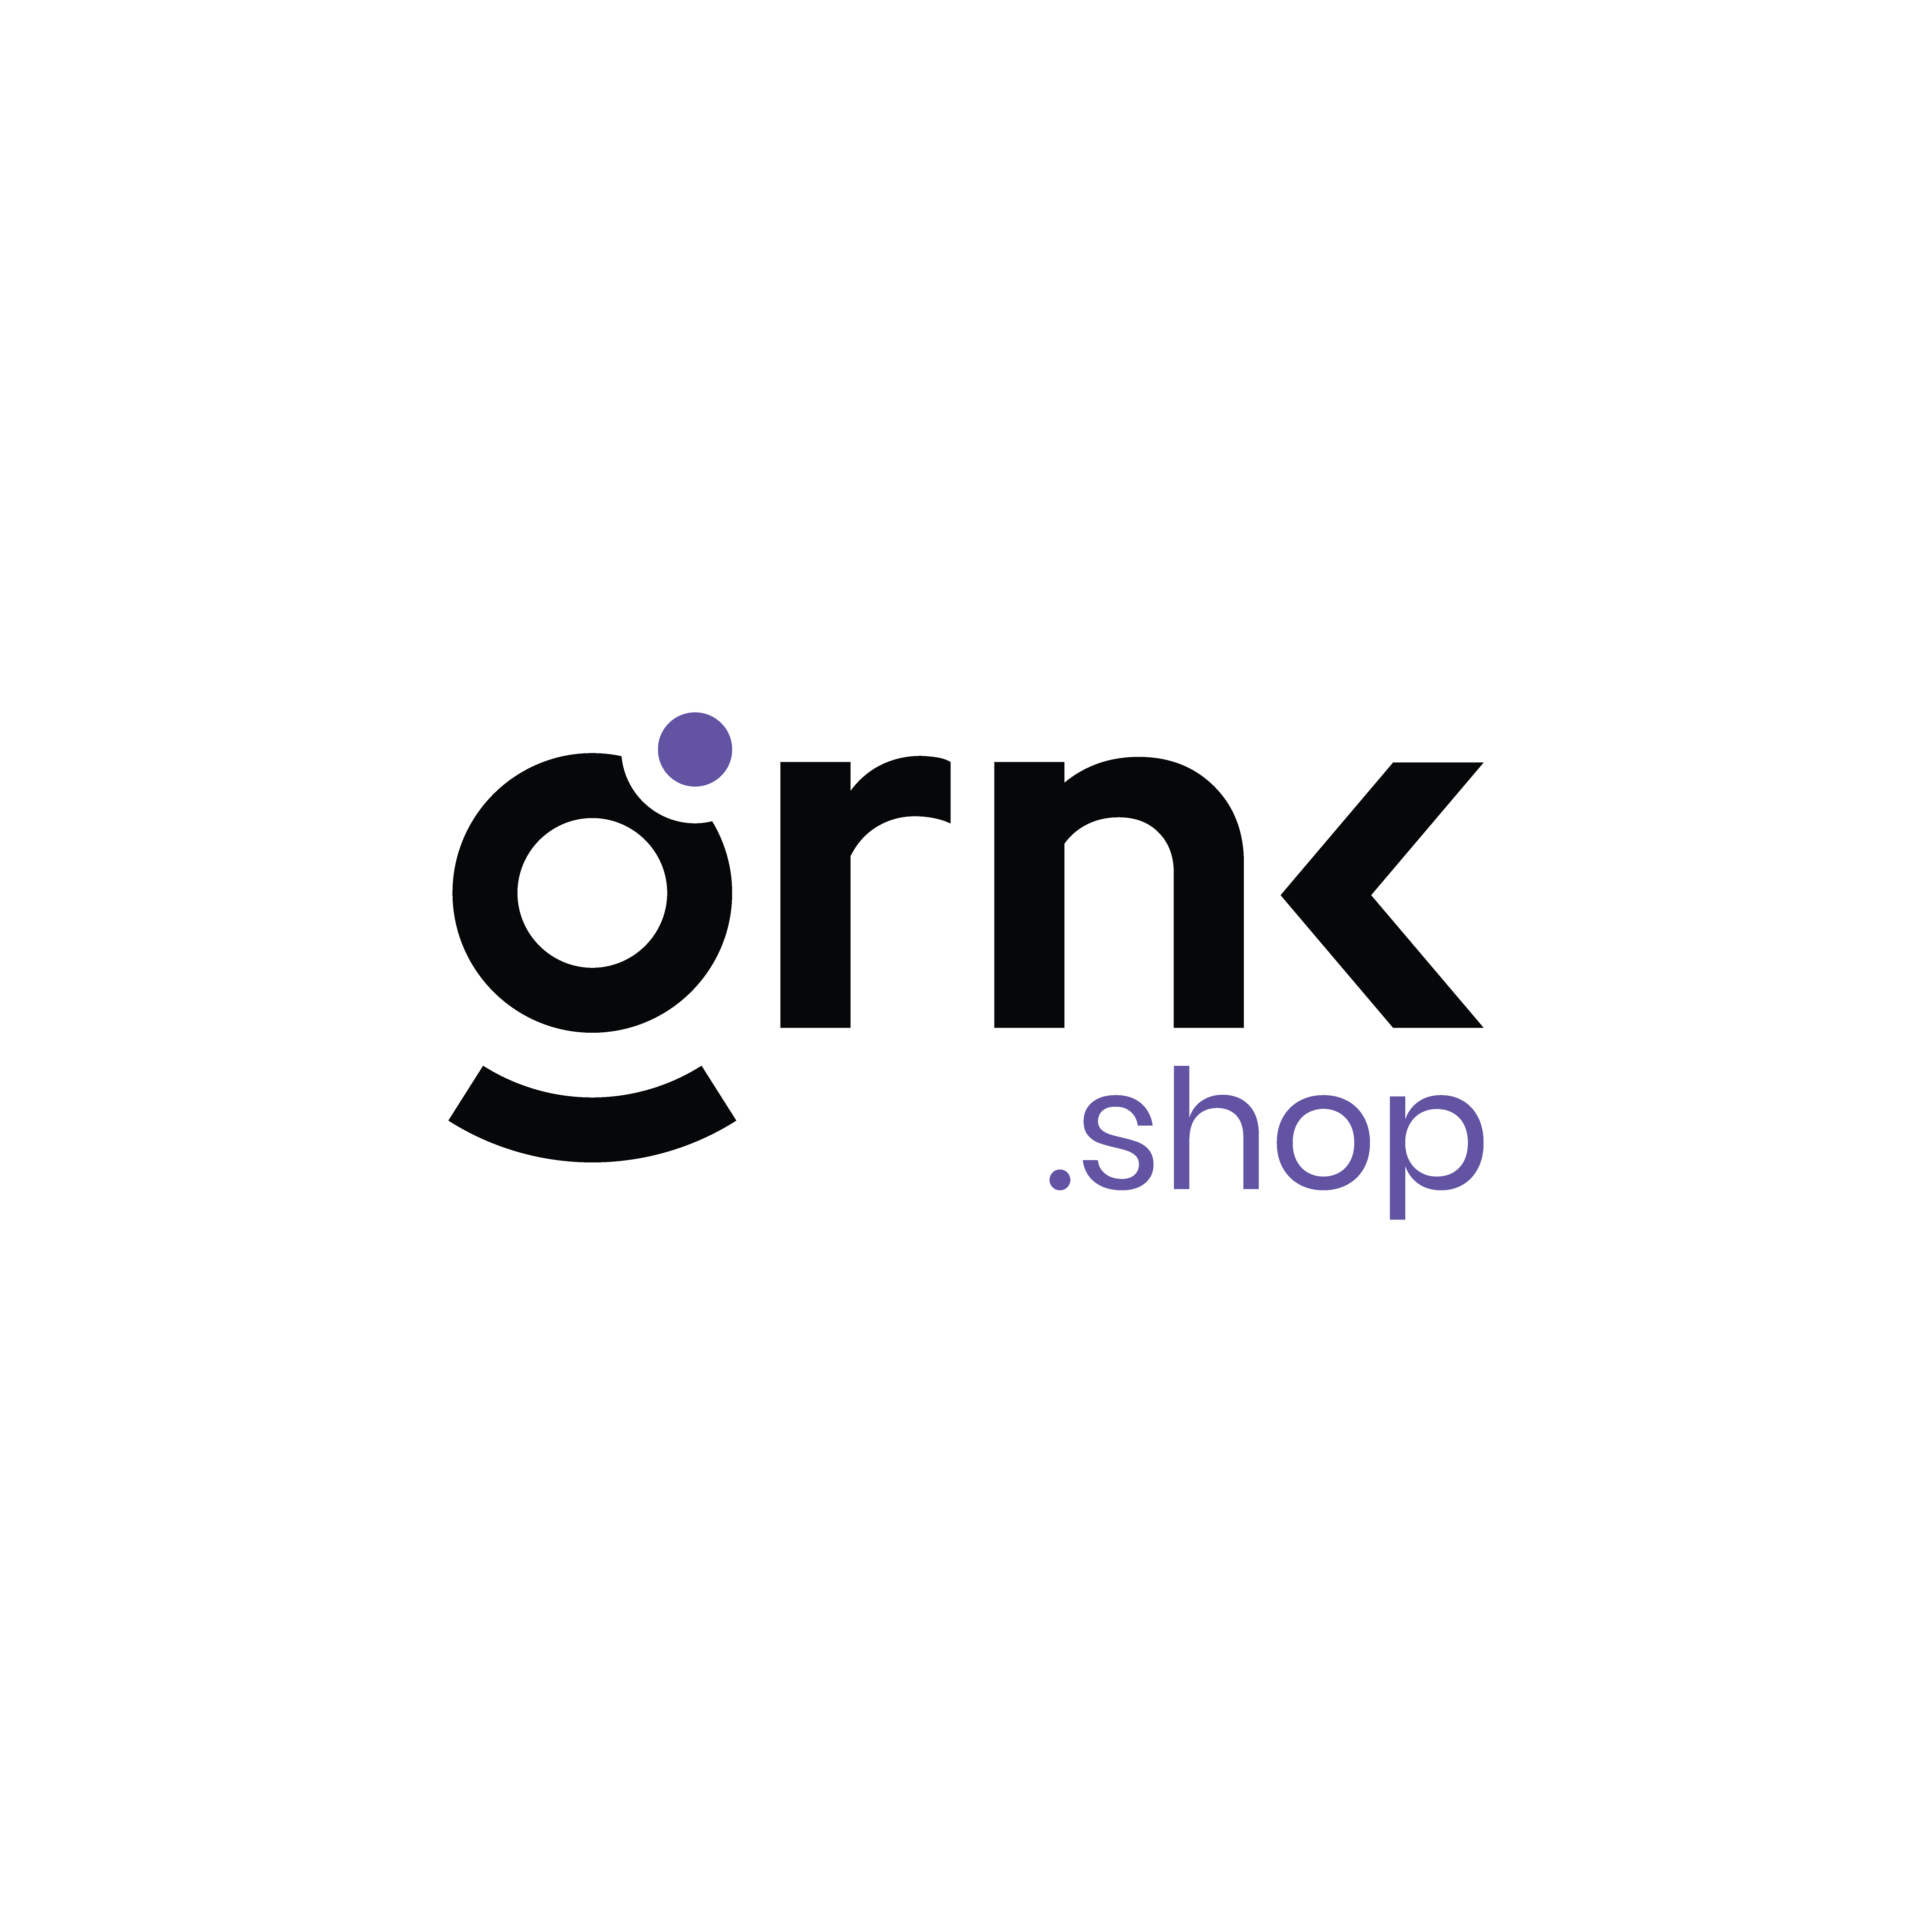 (c) Grnk.shop